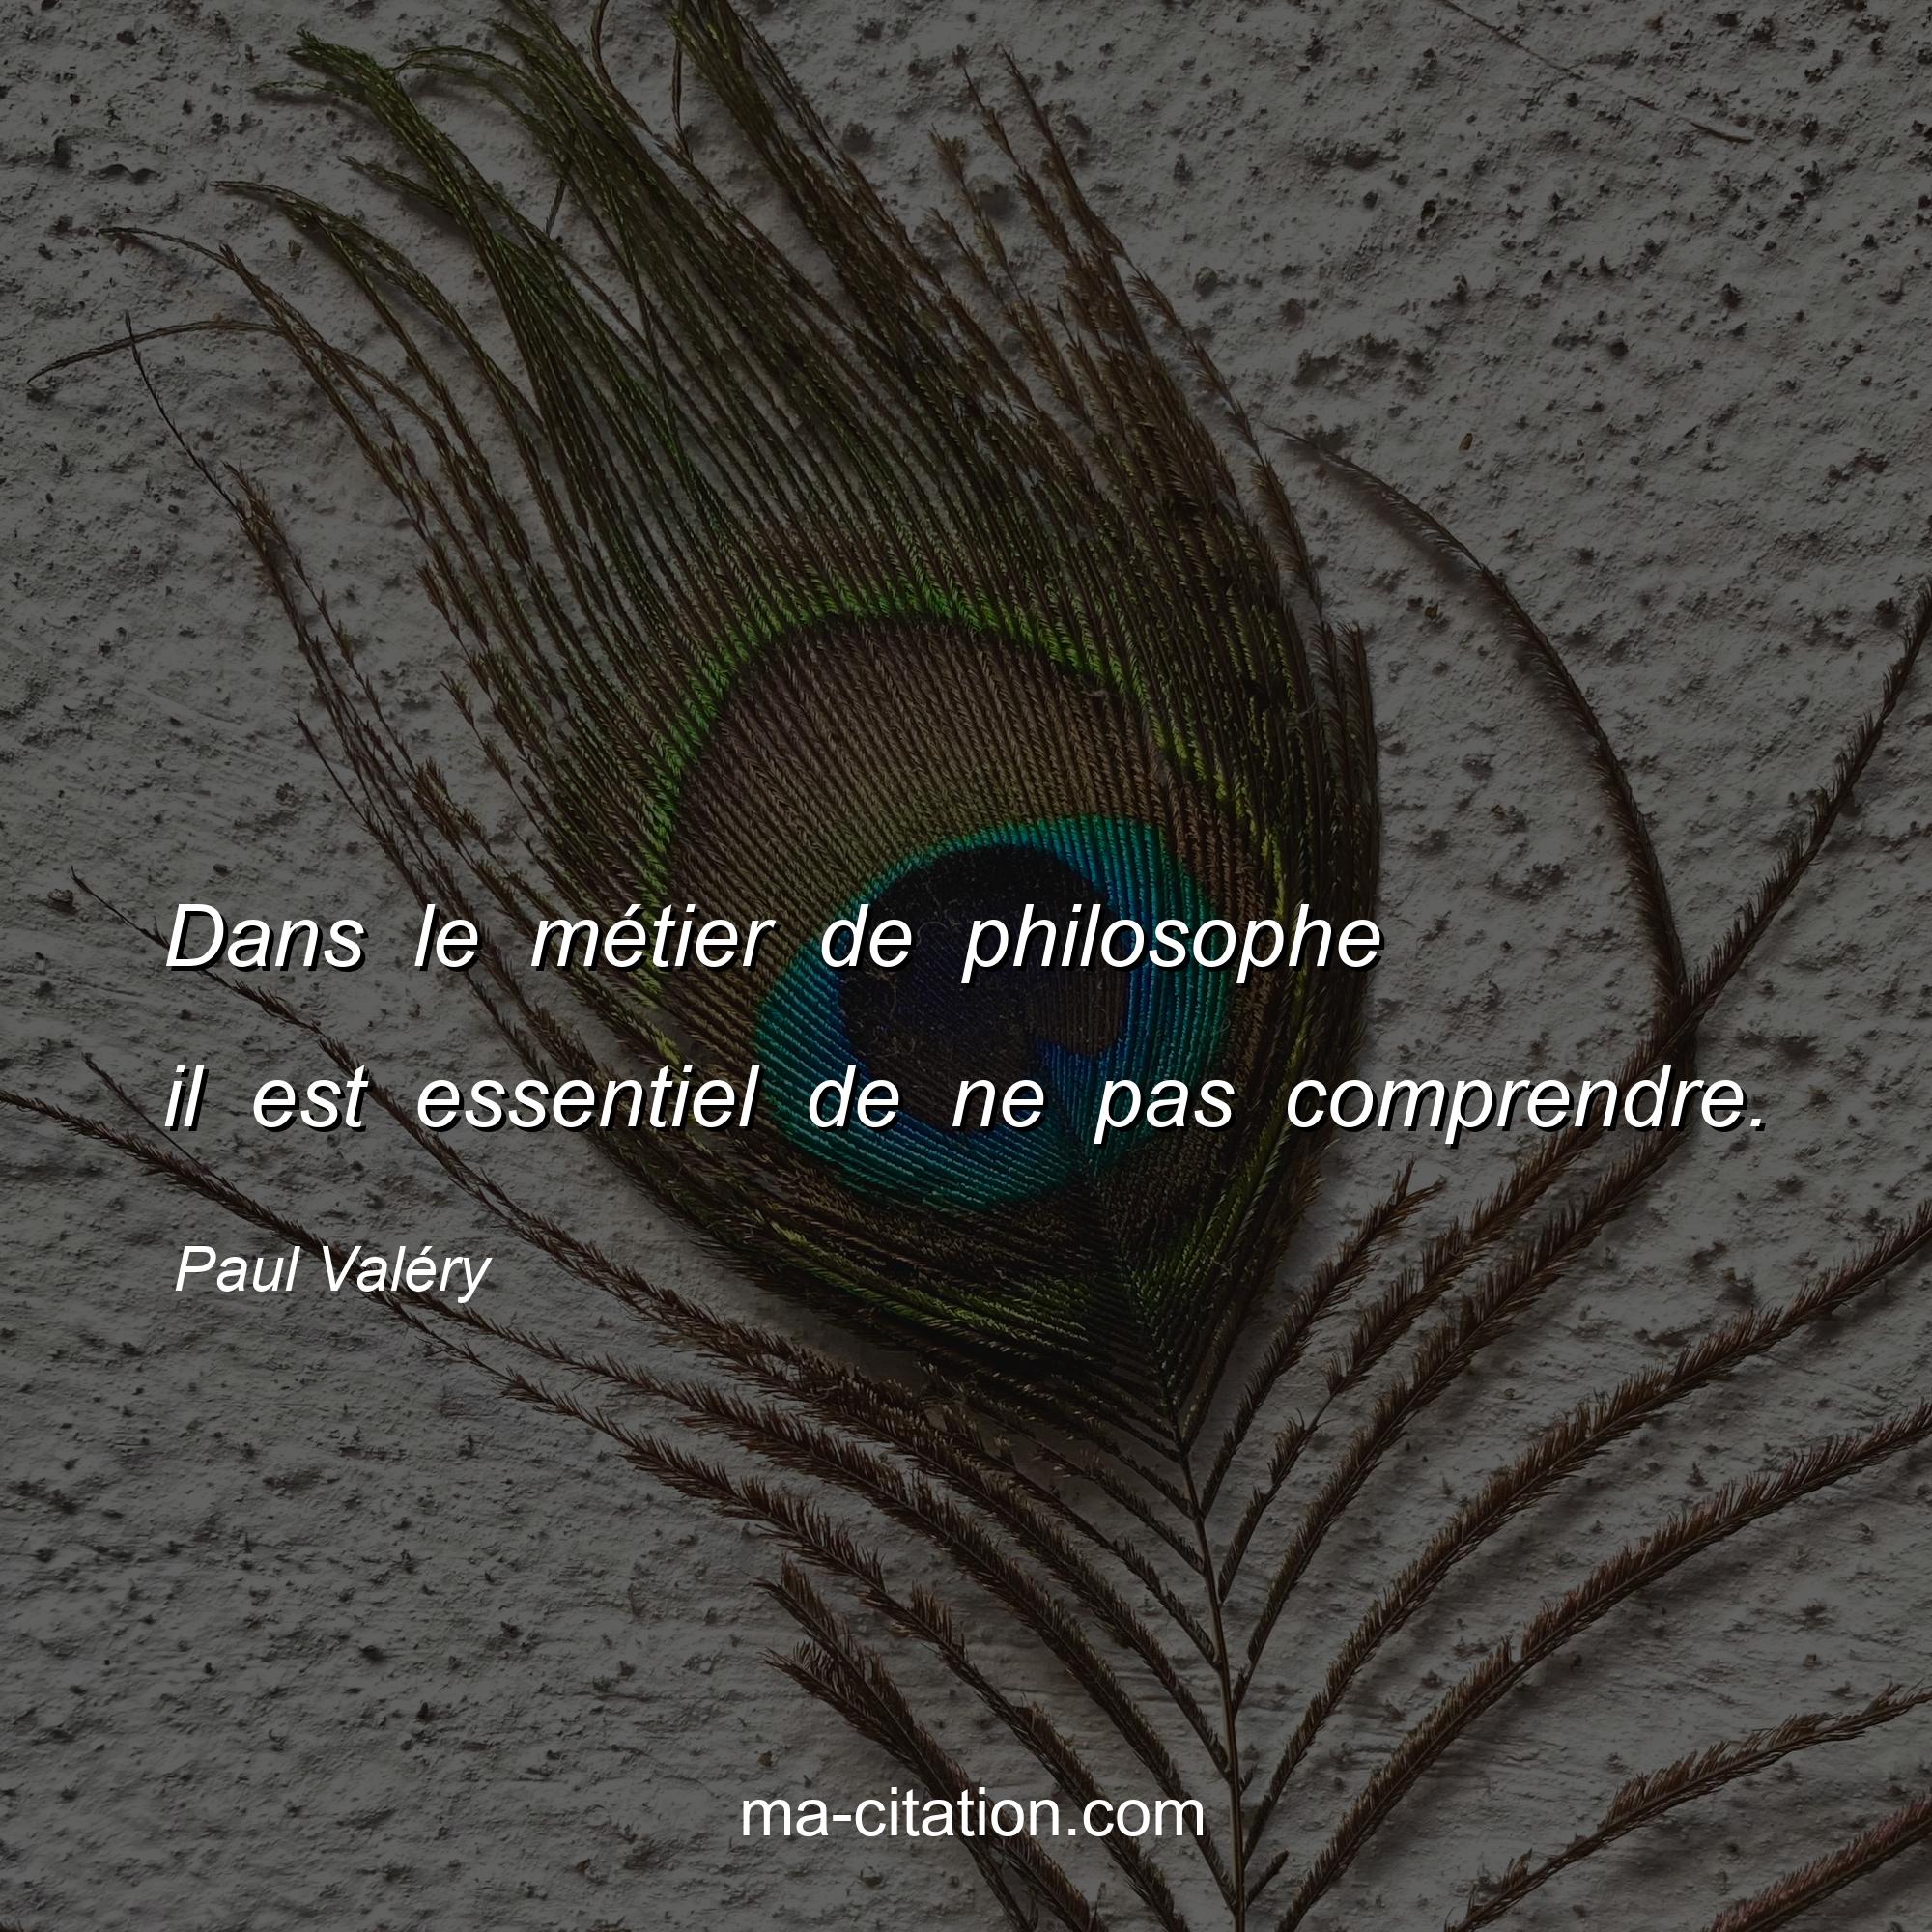 Paul Valéry : Dans le métier de philosophe il est essentiel de ne pas comprendre.